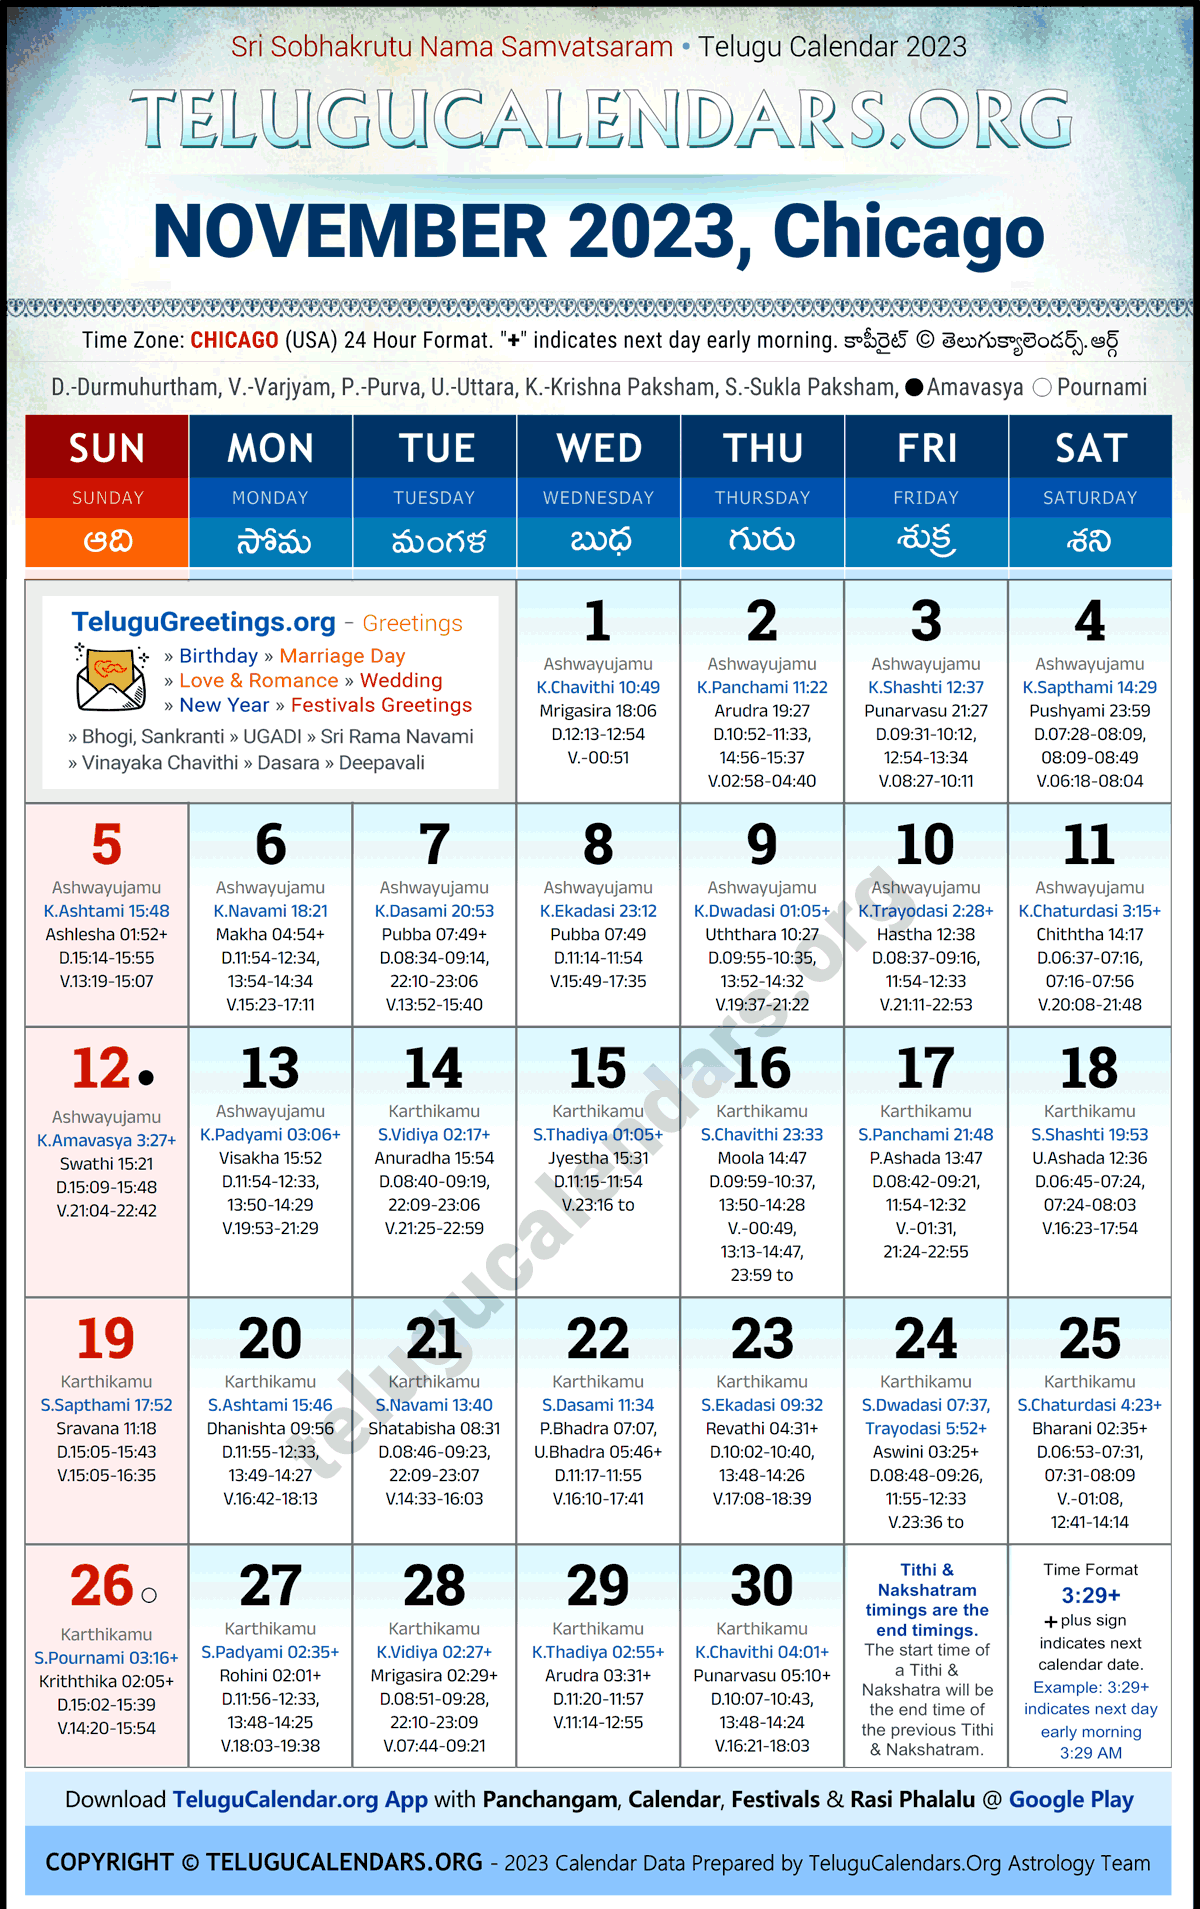 Telugu Calendar 2023 November Festivals for Chicago